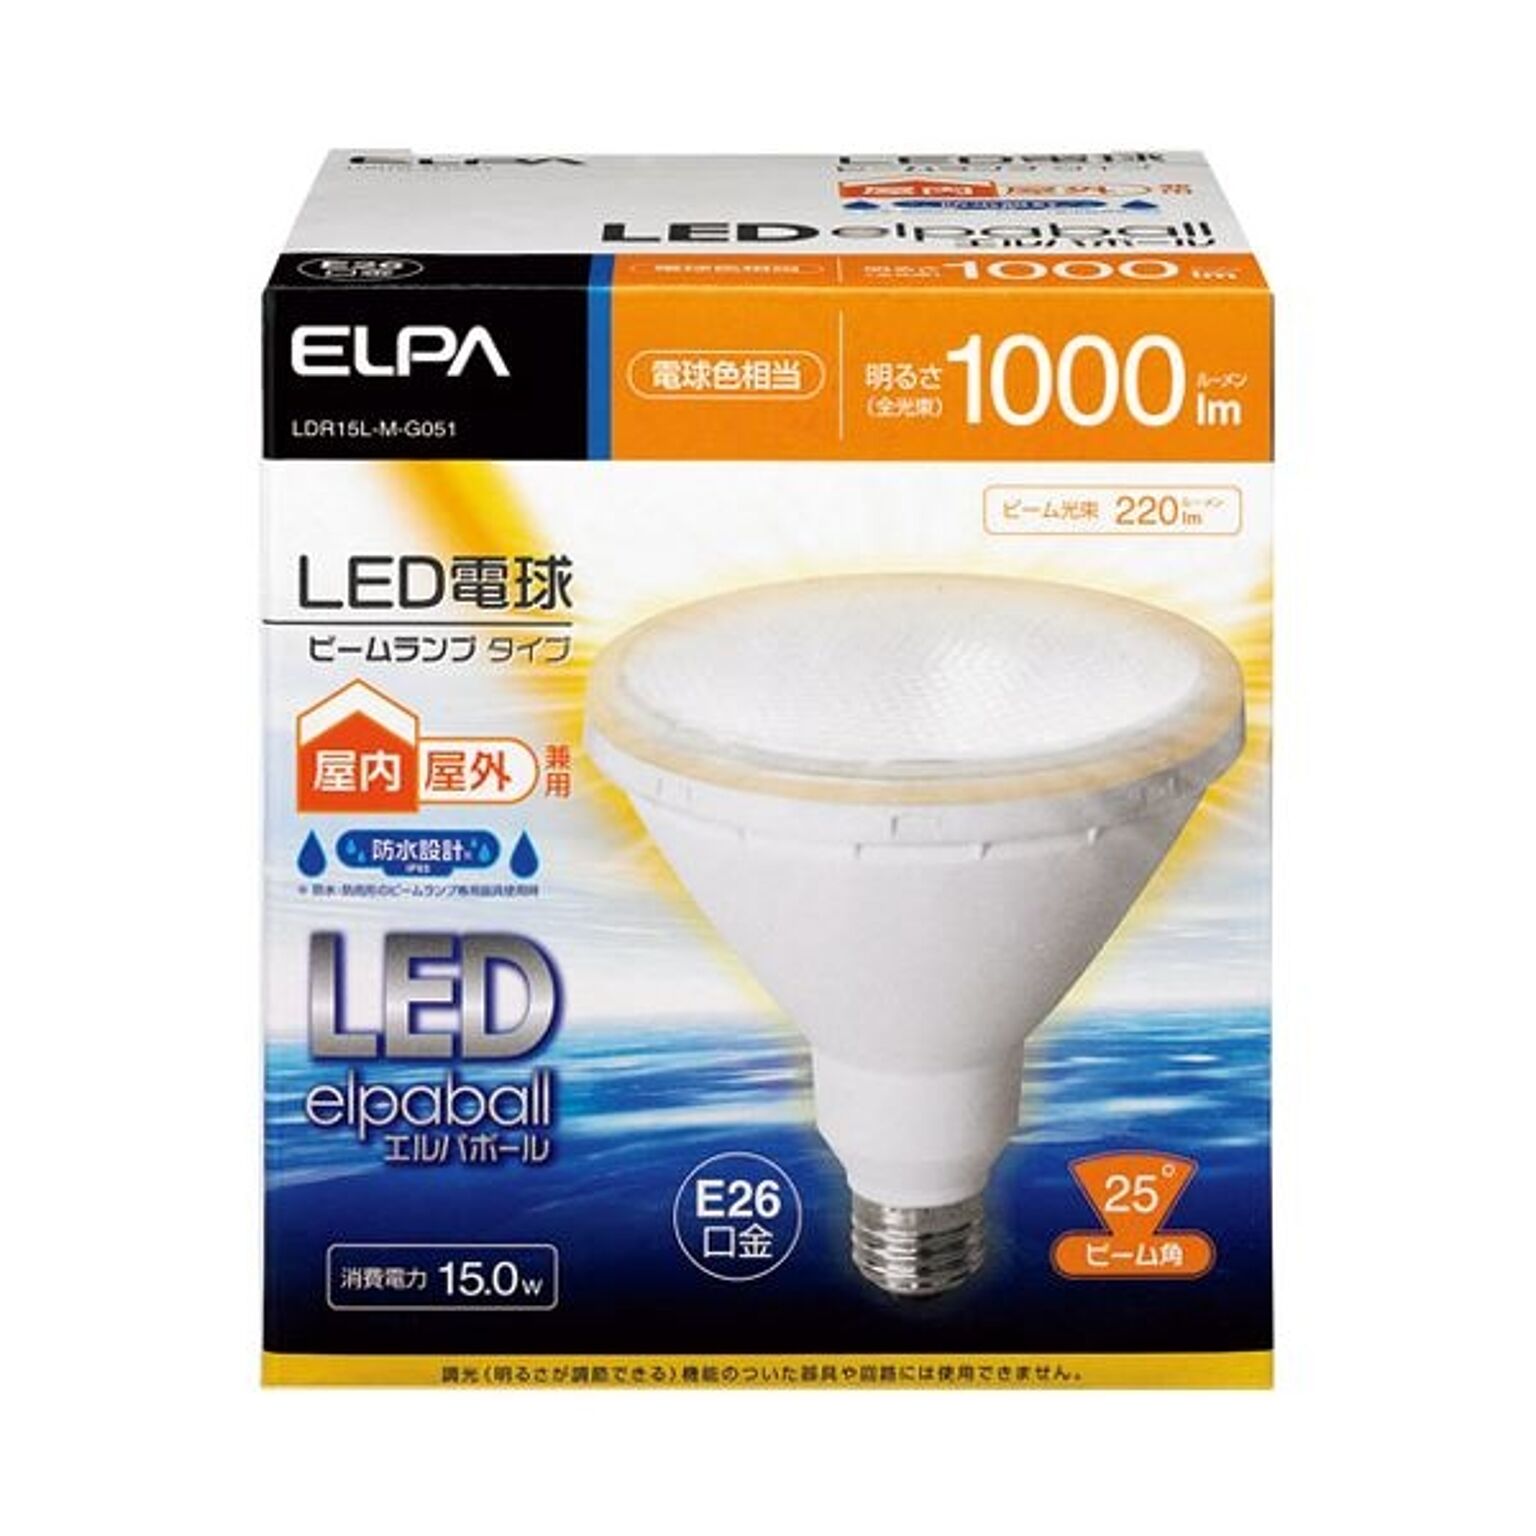 （まとめ） 朝日電器 LED電球ビームタイプ 電球色 LDR15L-M-G051×3セット